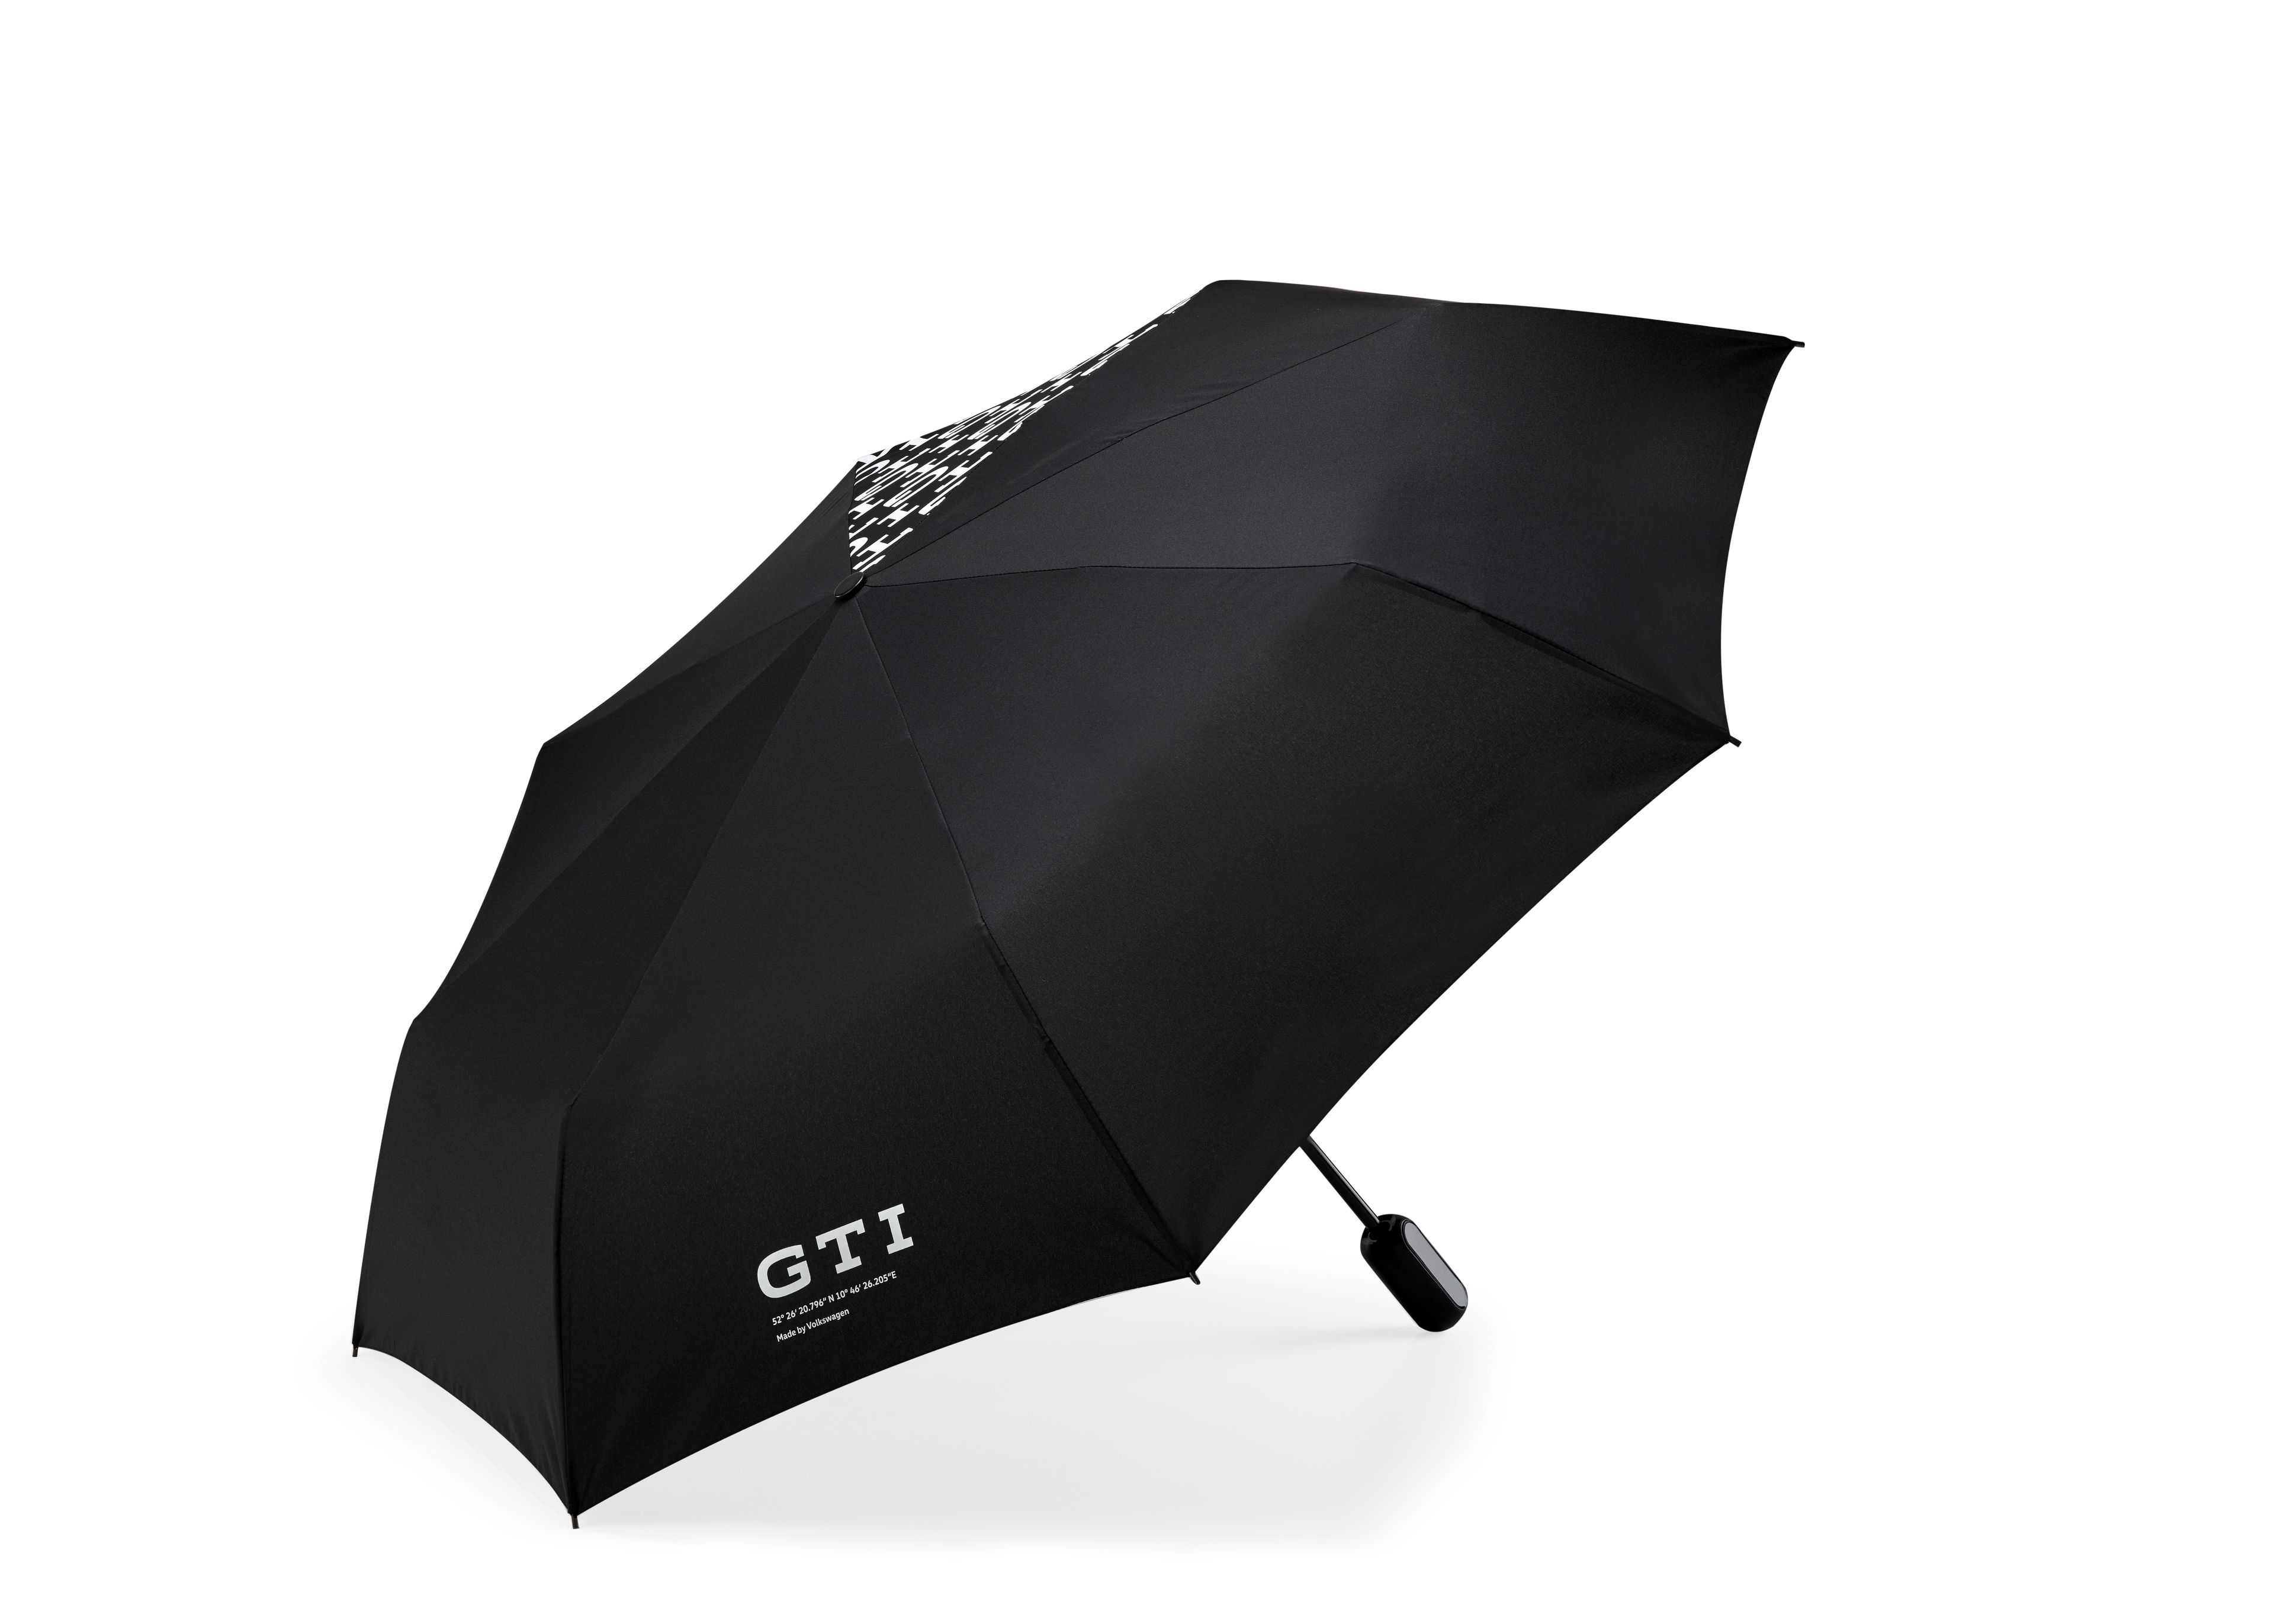 Volkswagen GTI Taschen-Regenschirm